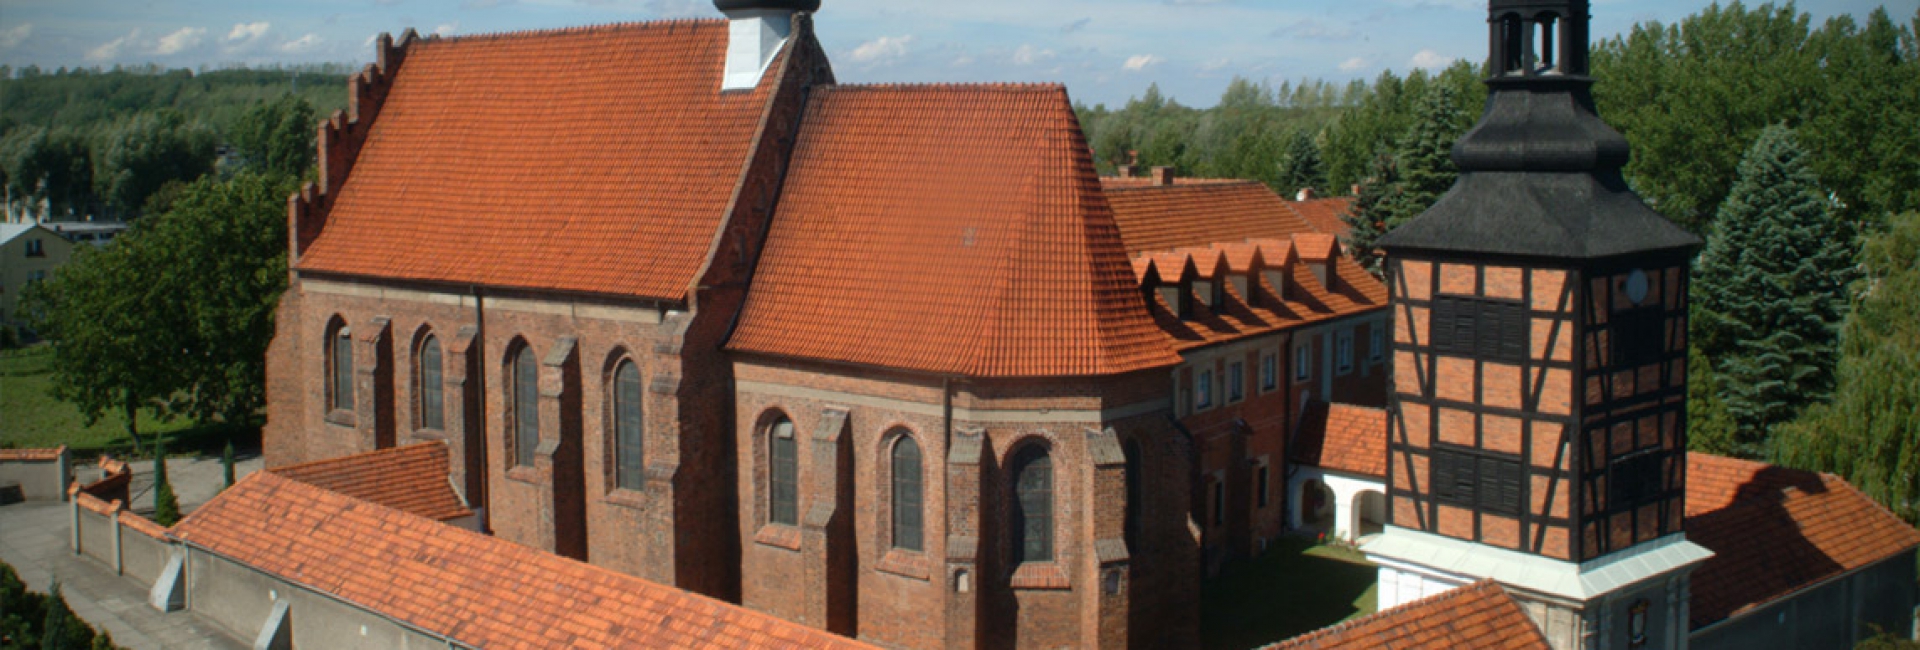 Historia klasztoru w Kazimierzu Biskupim